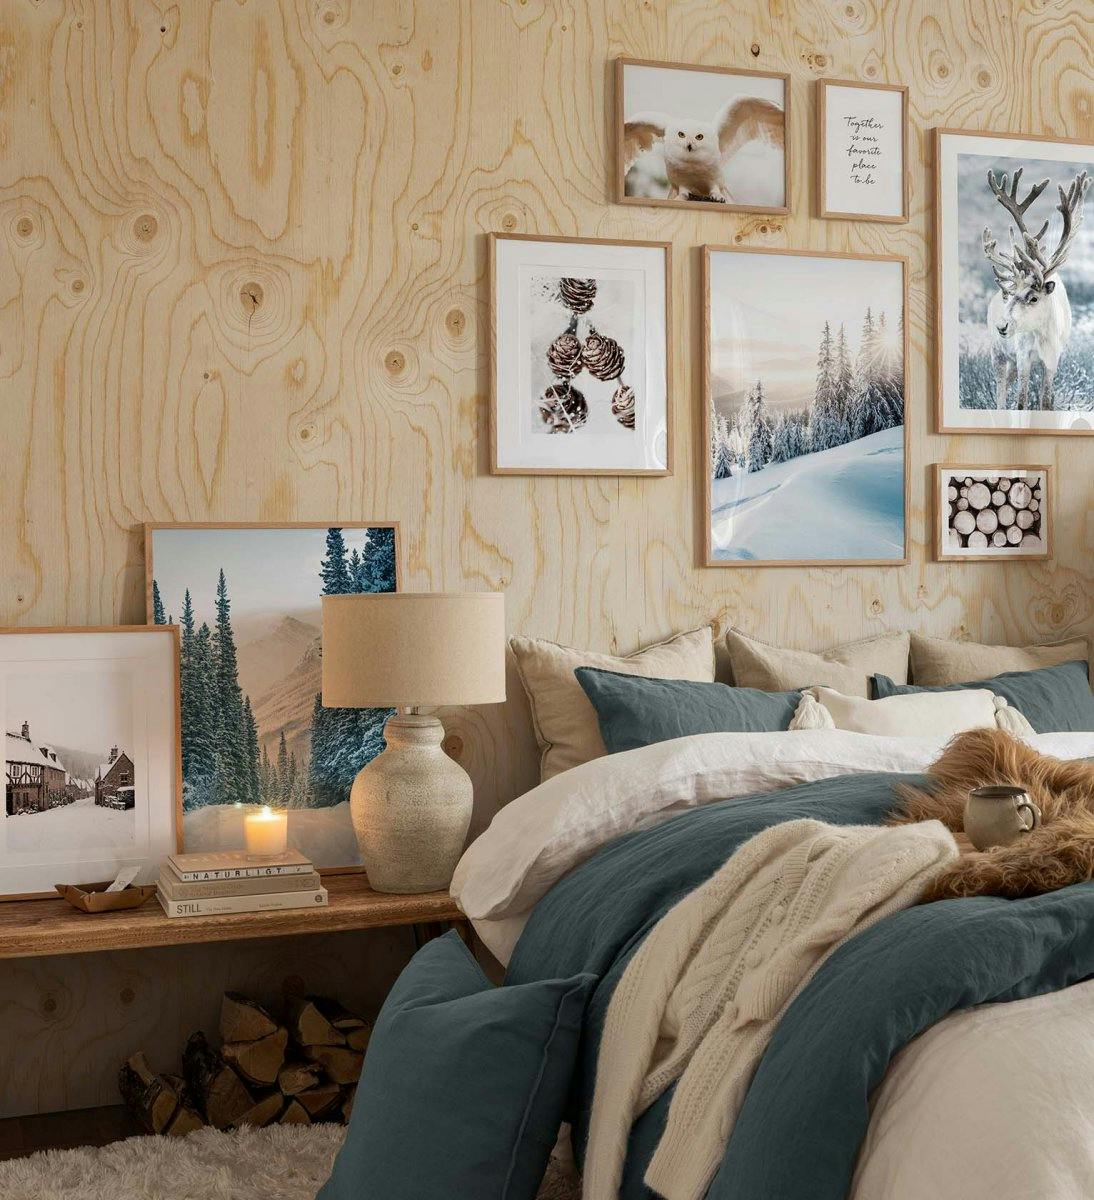 Gallerivägg med vinteraffischer i vitt, brunt och grönt kombinerat med citattryck med ekramar till sovrummet